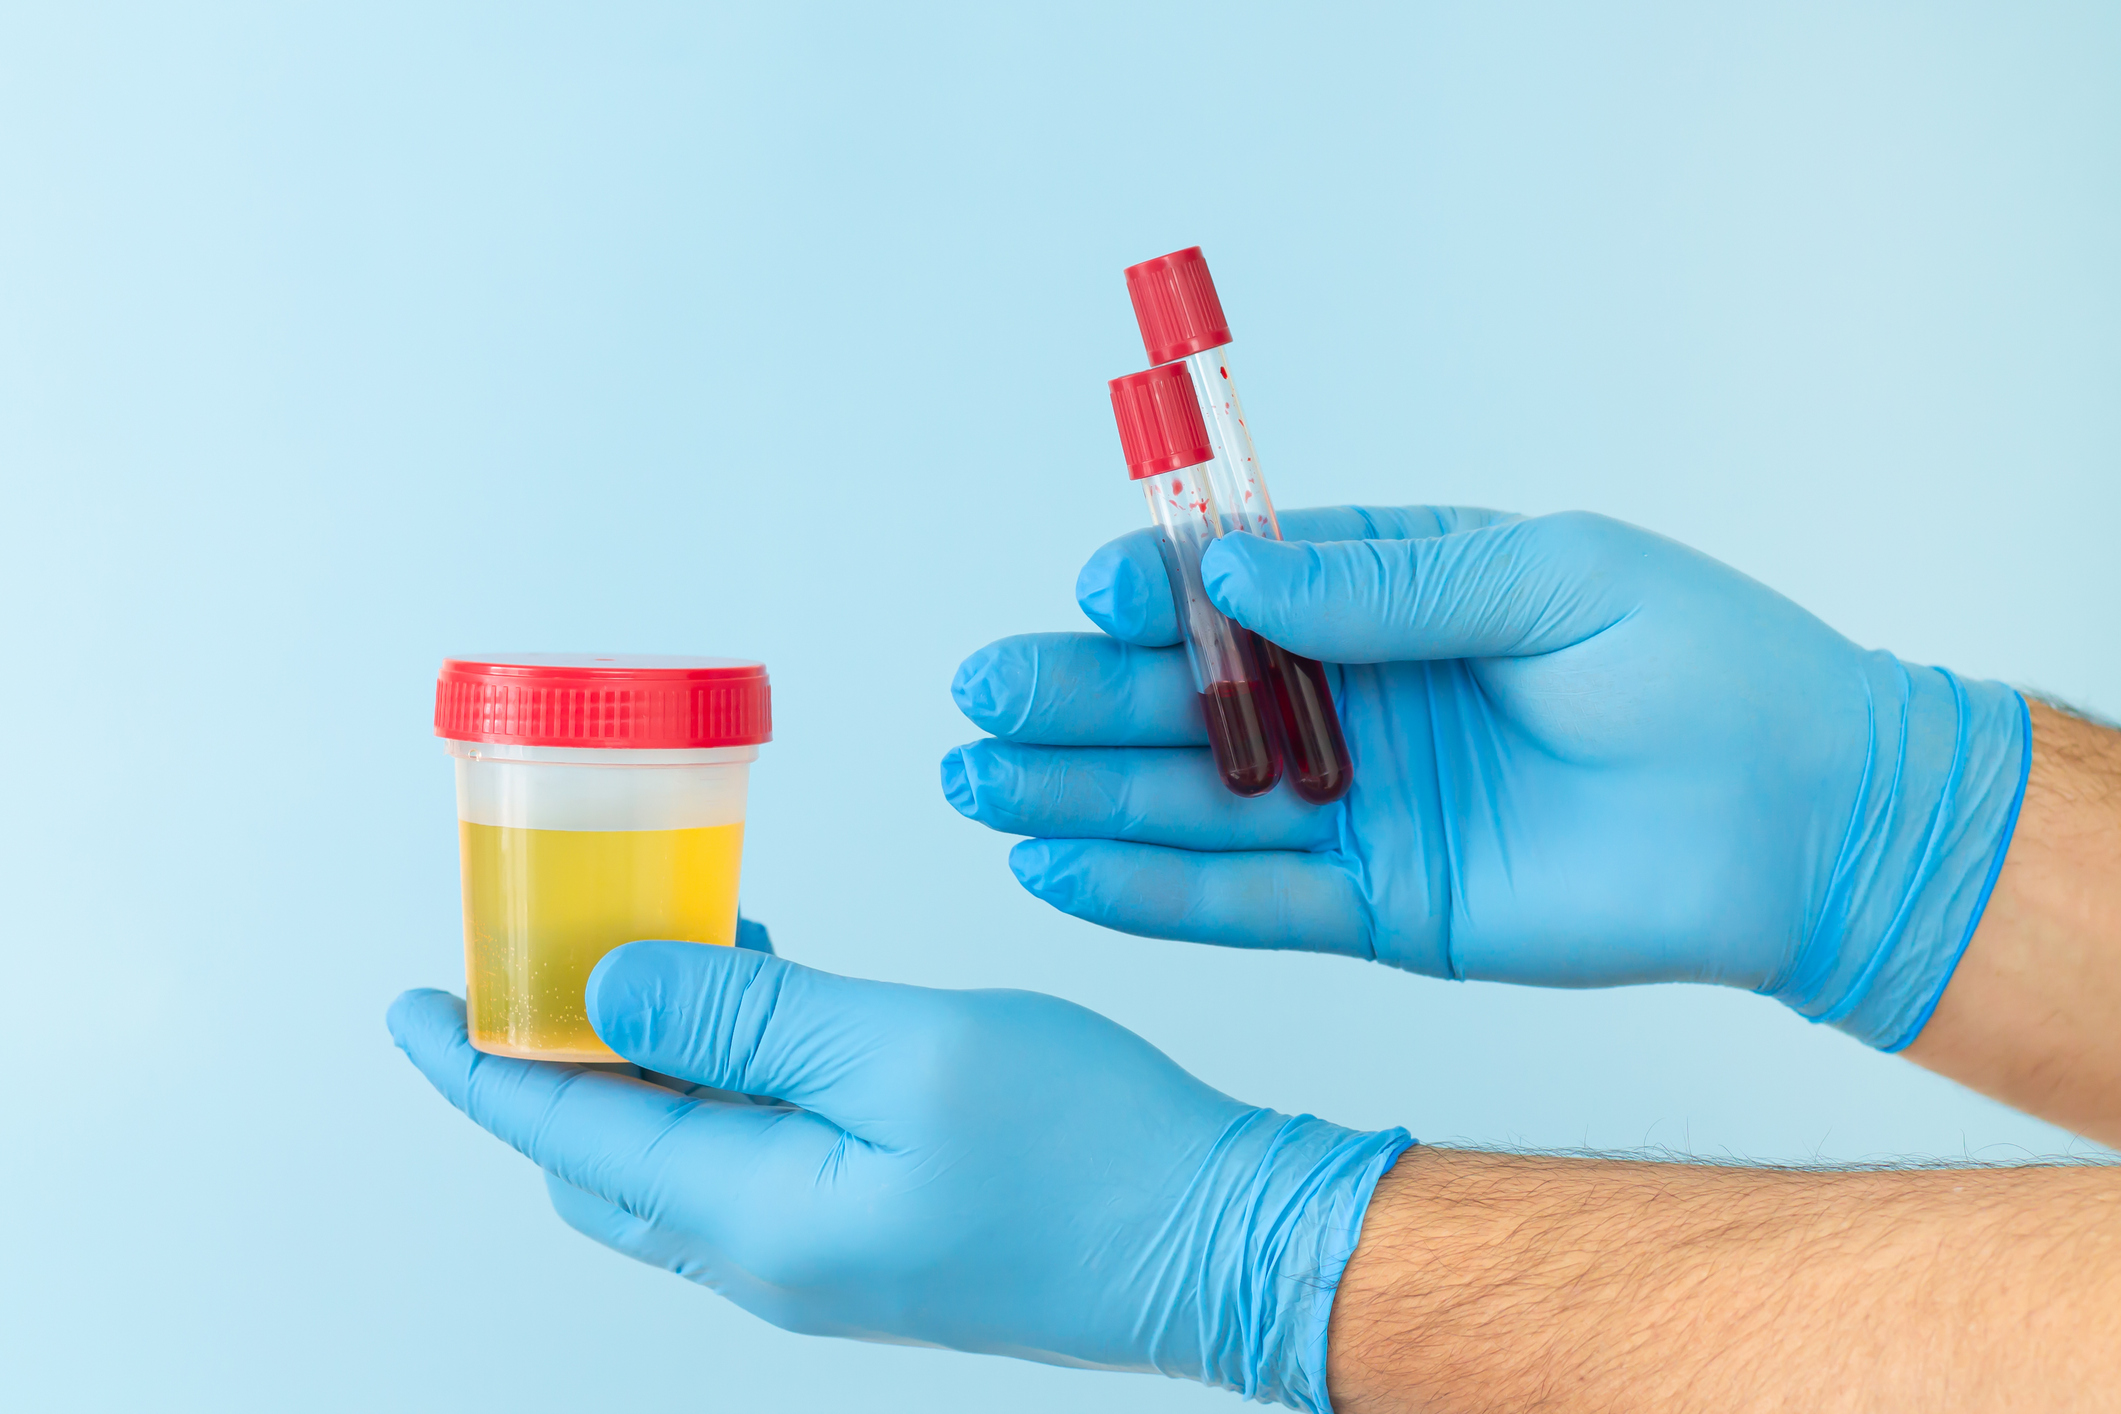 Odchylky od fyziologických hladin chloridů v krvi nebo moči se zjišťují laboratorními testy.